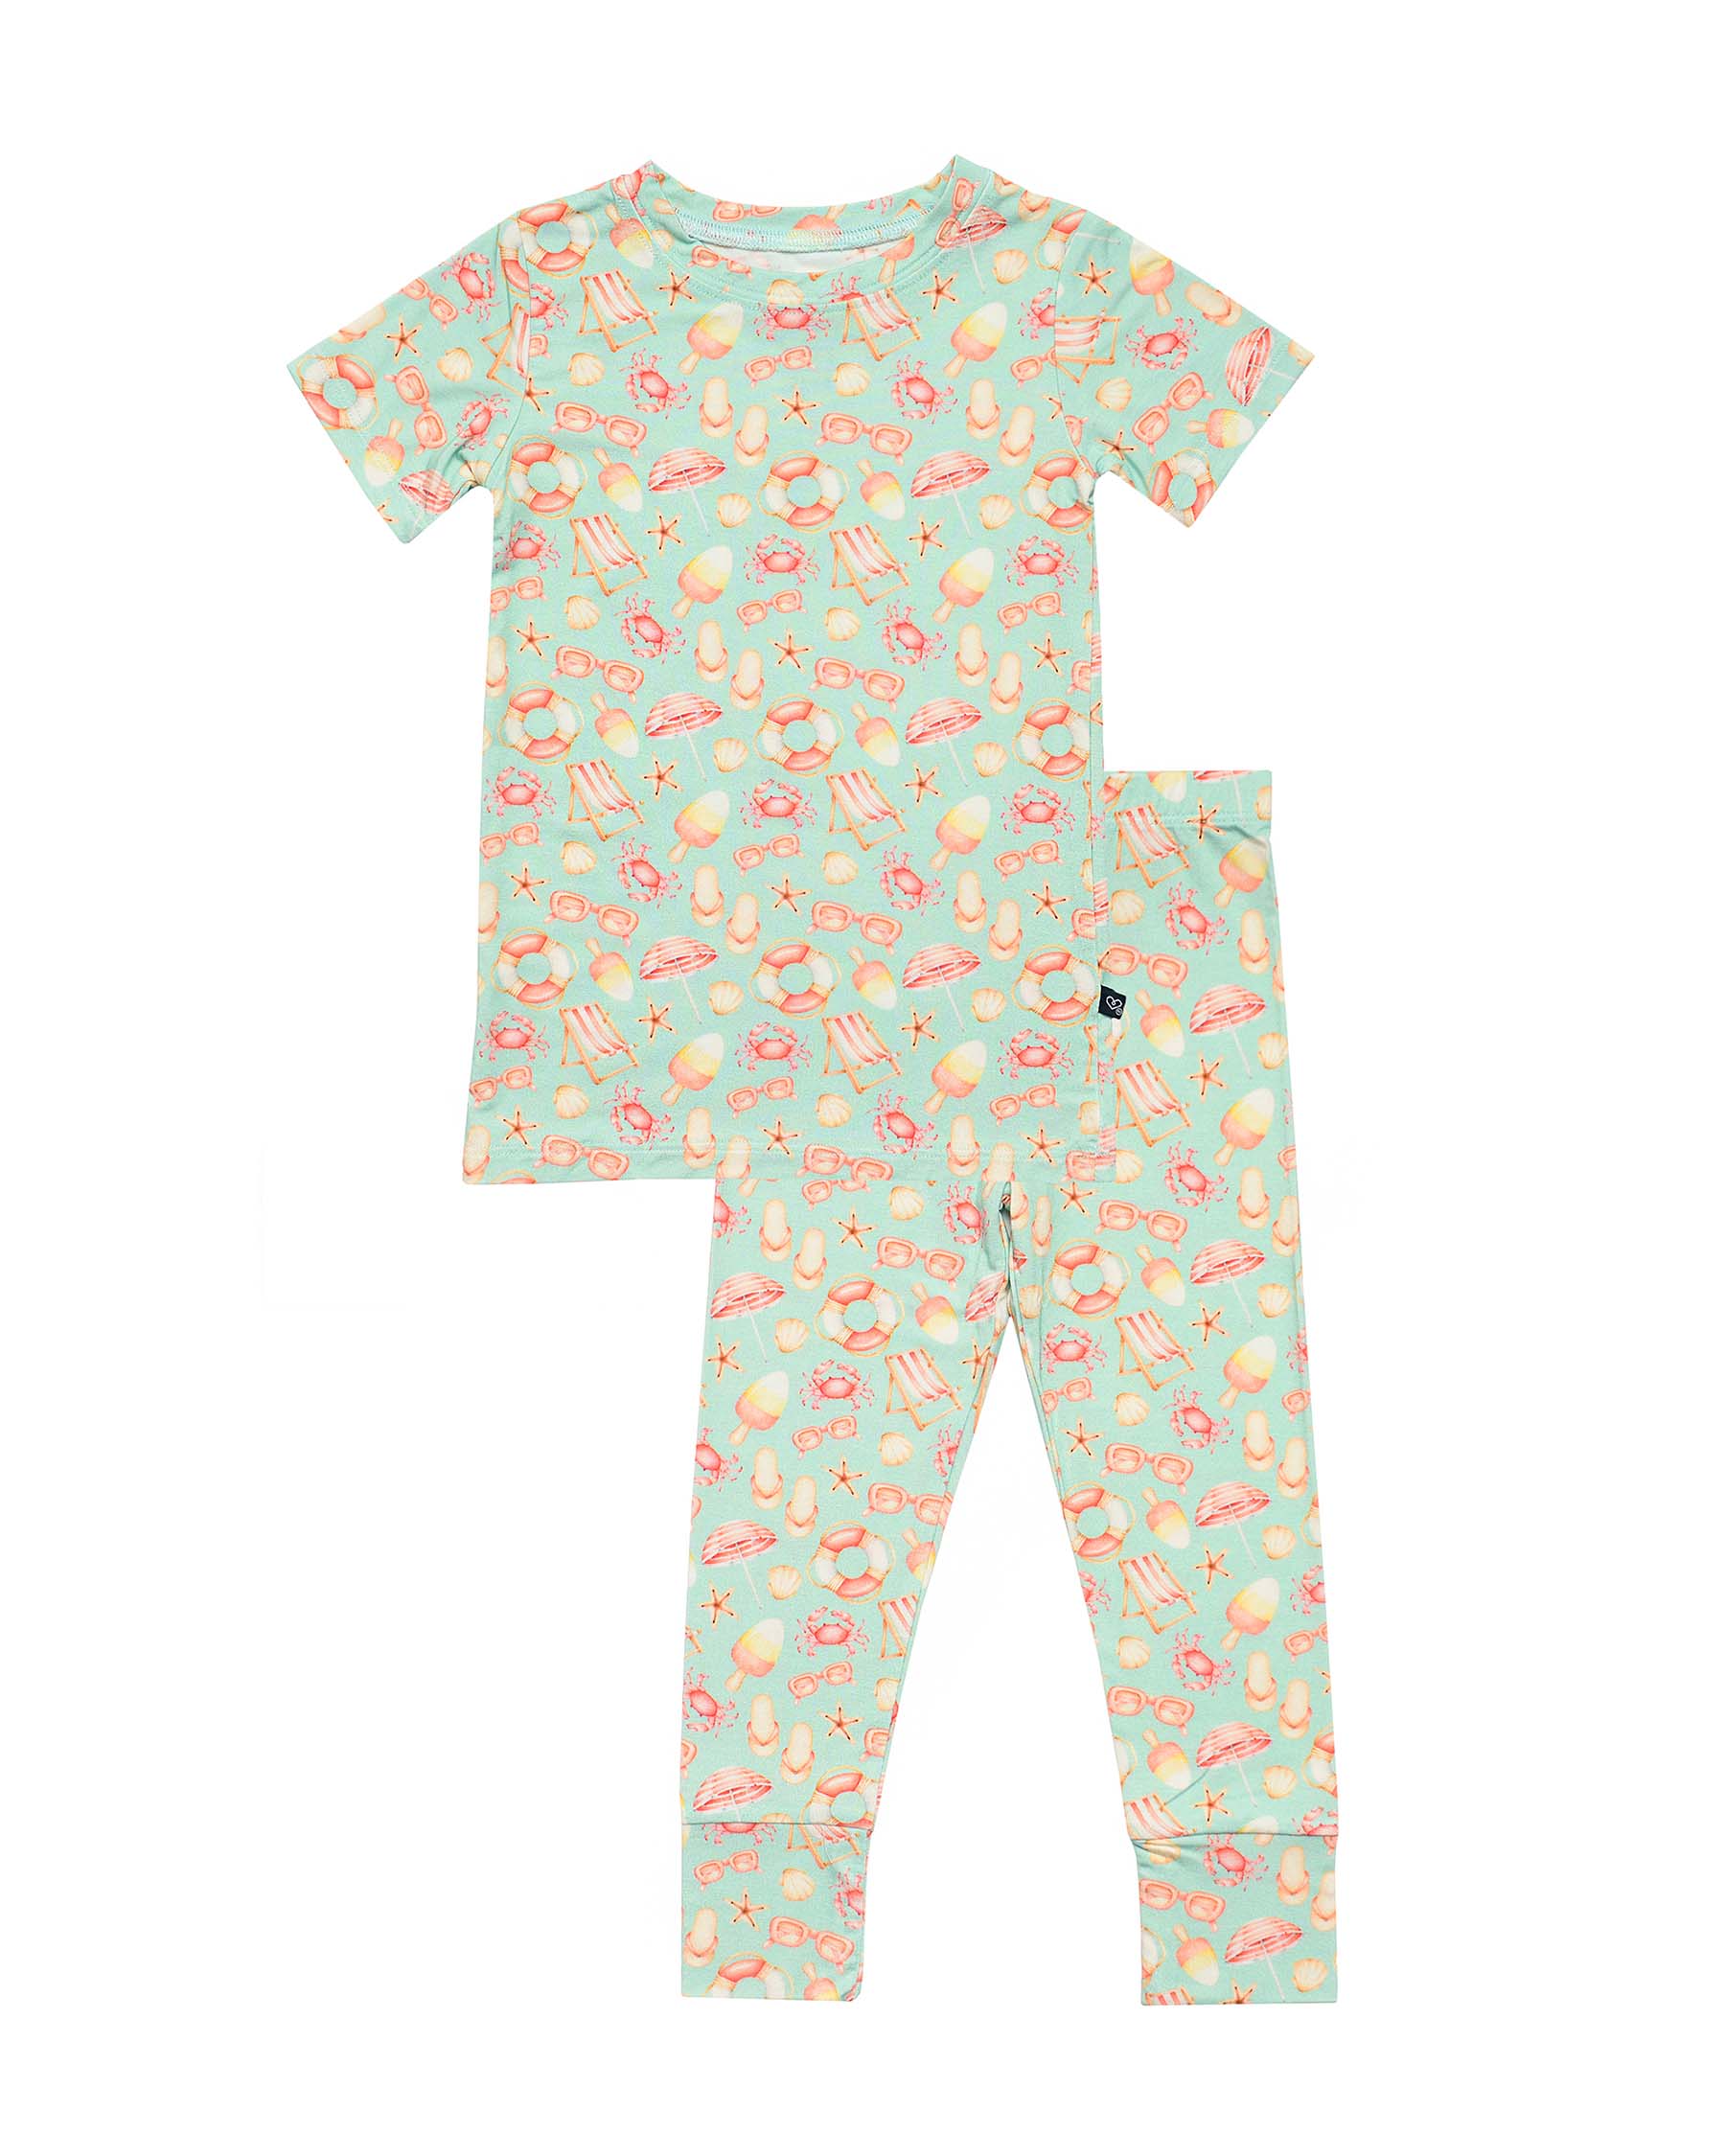 Jesse Pajama Set